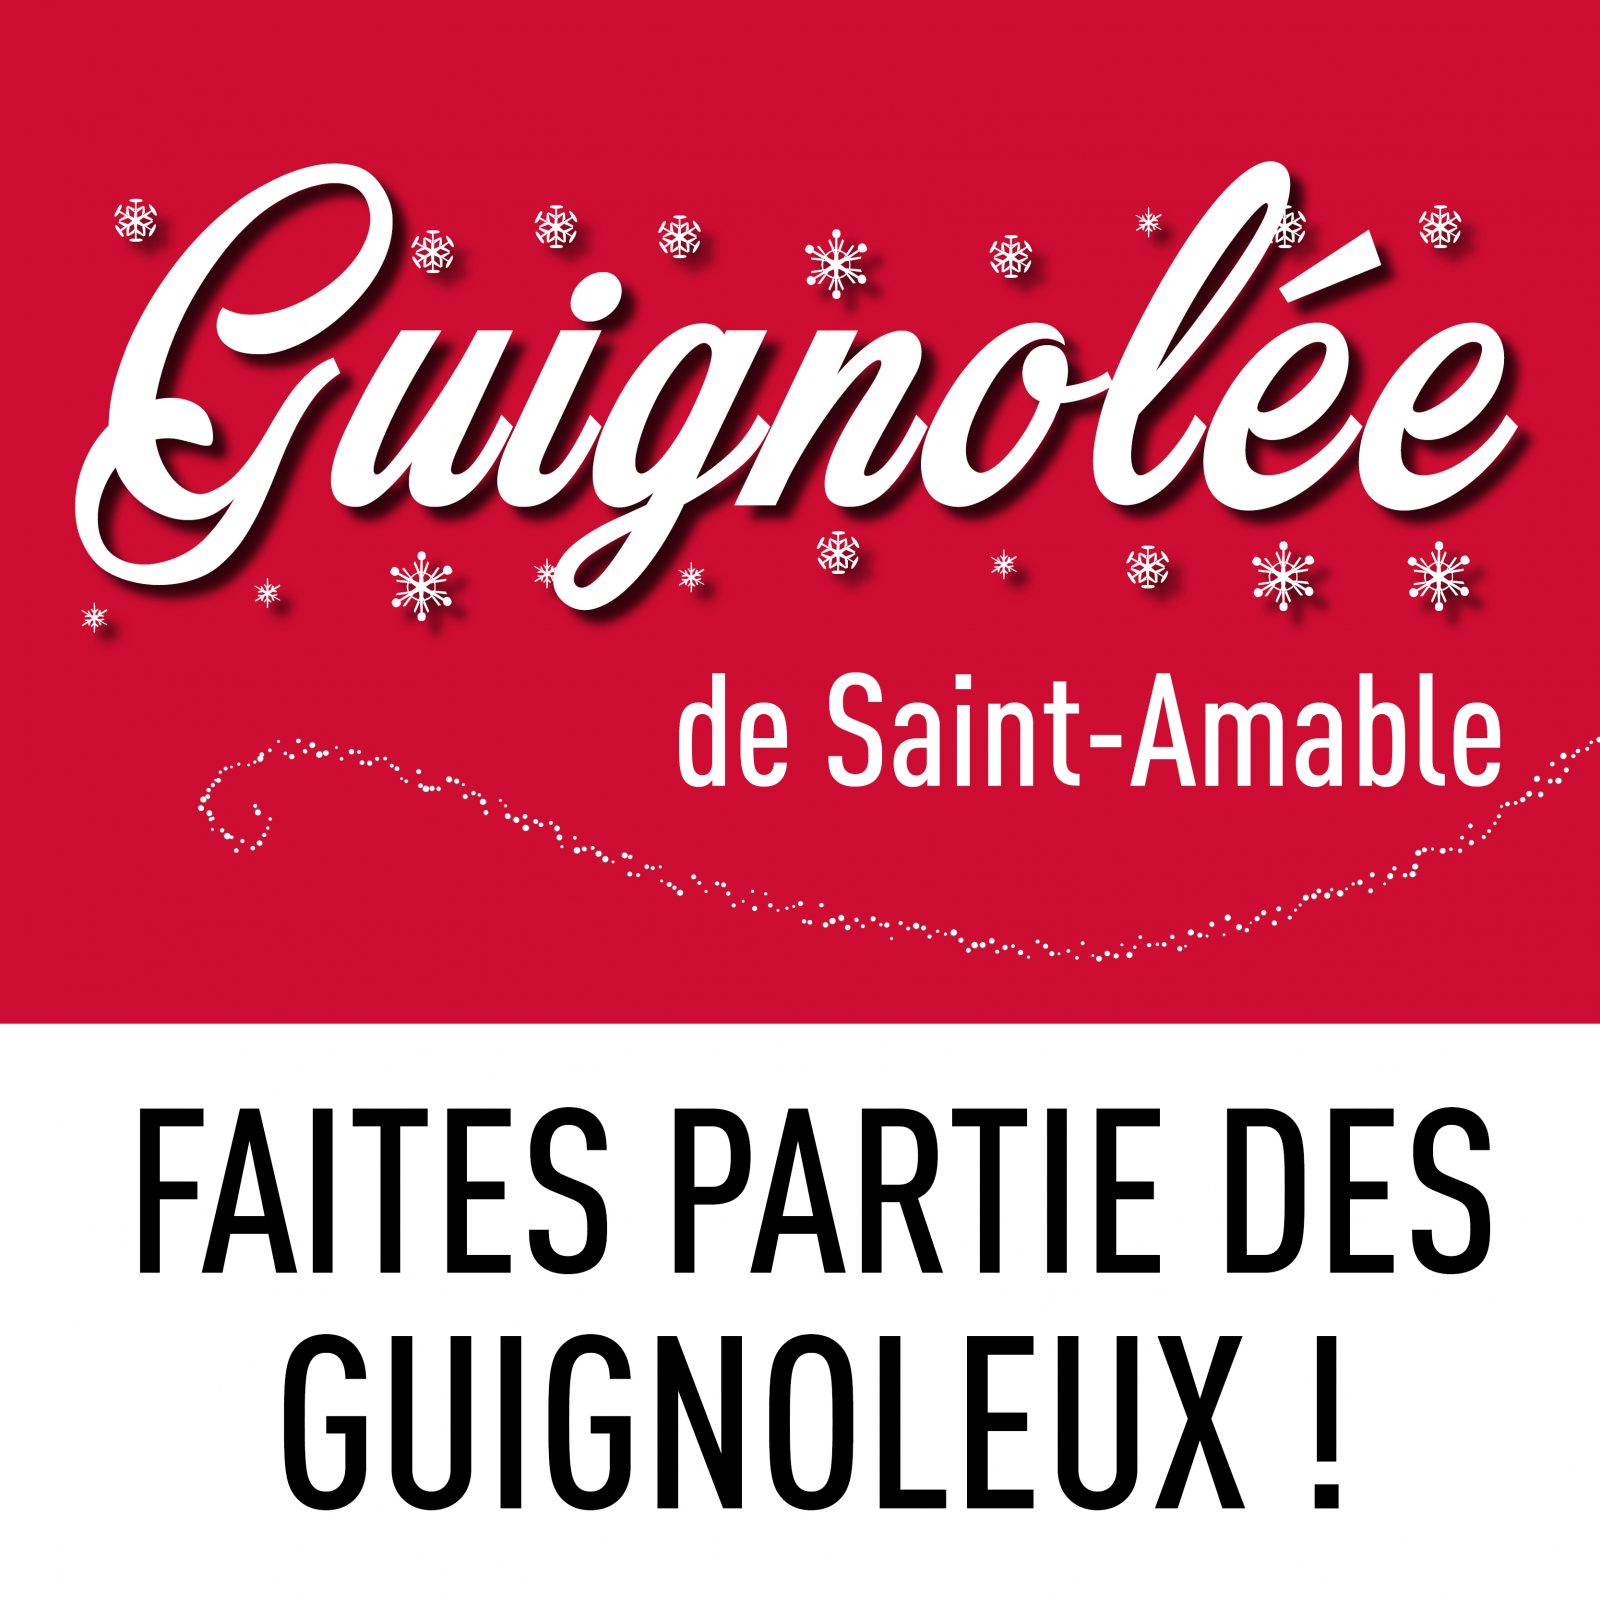 Faites partie de l’équipe des Guignoleux le 25 novembre prochain à Saint-Amable